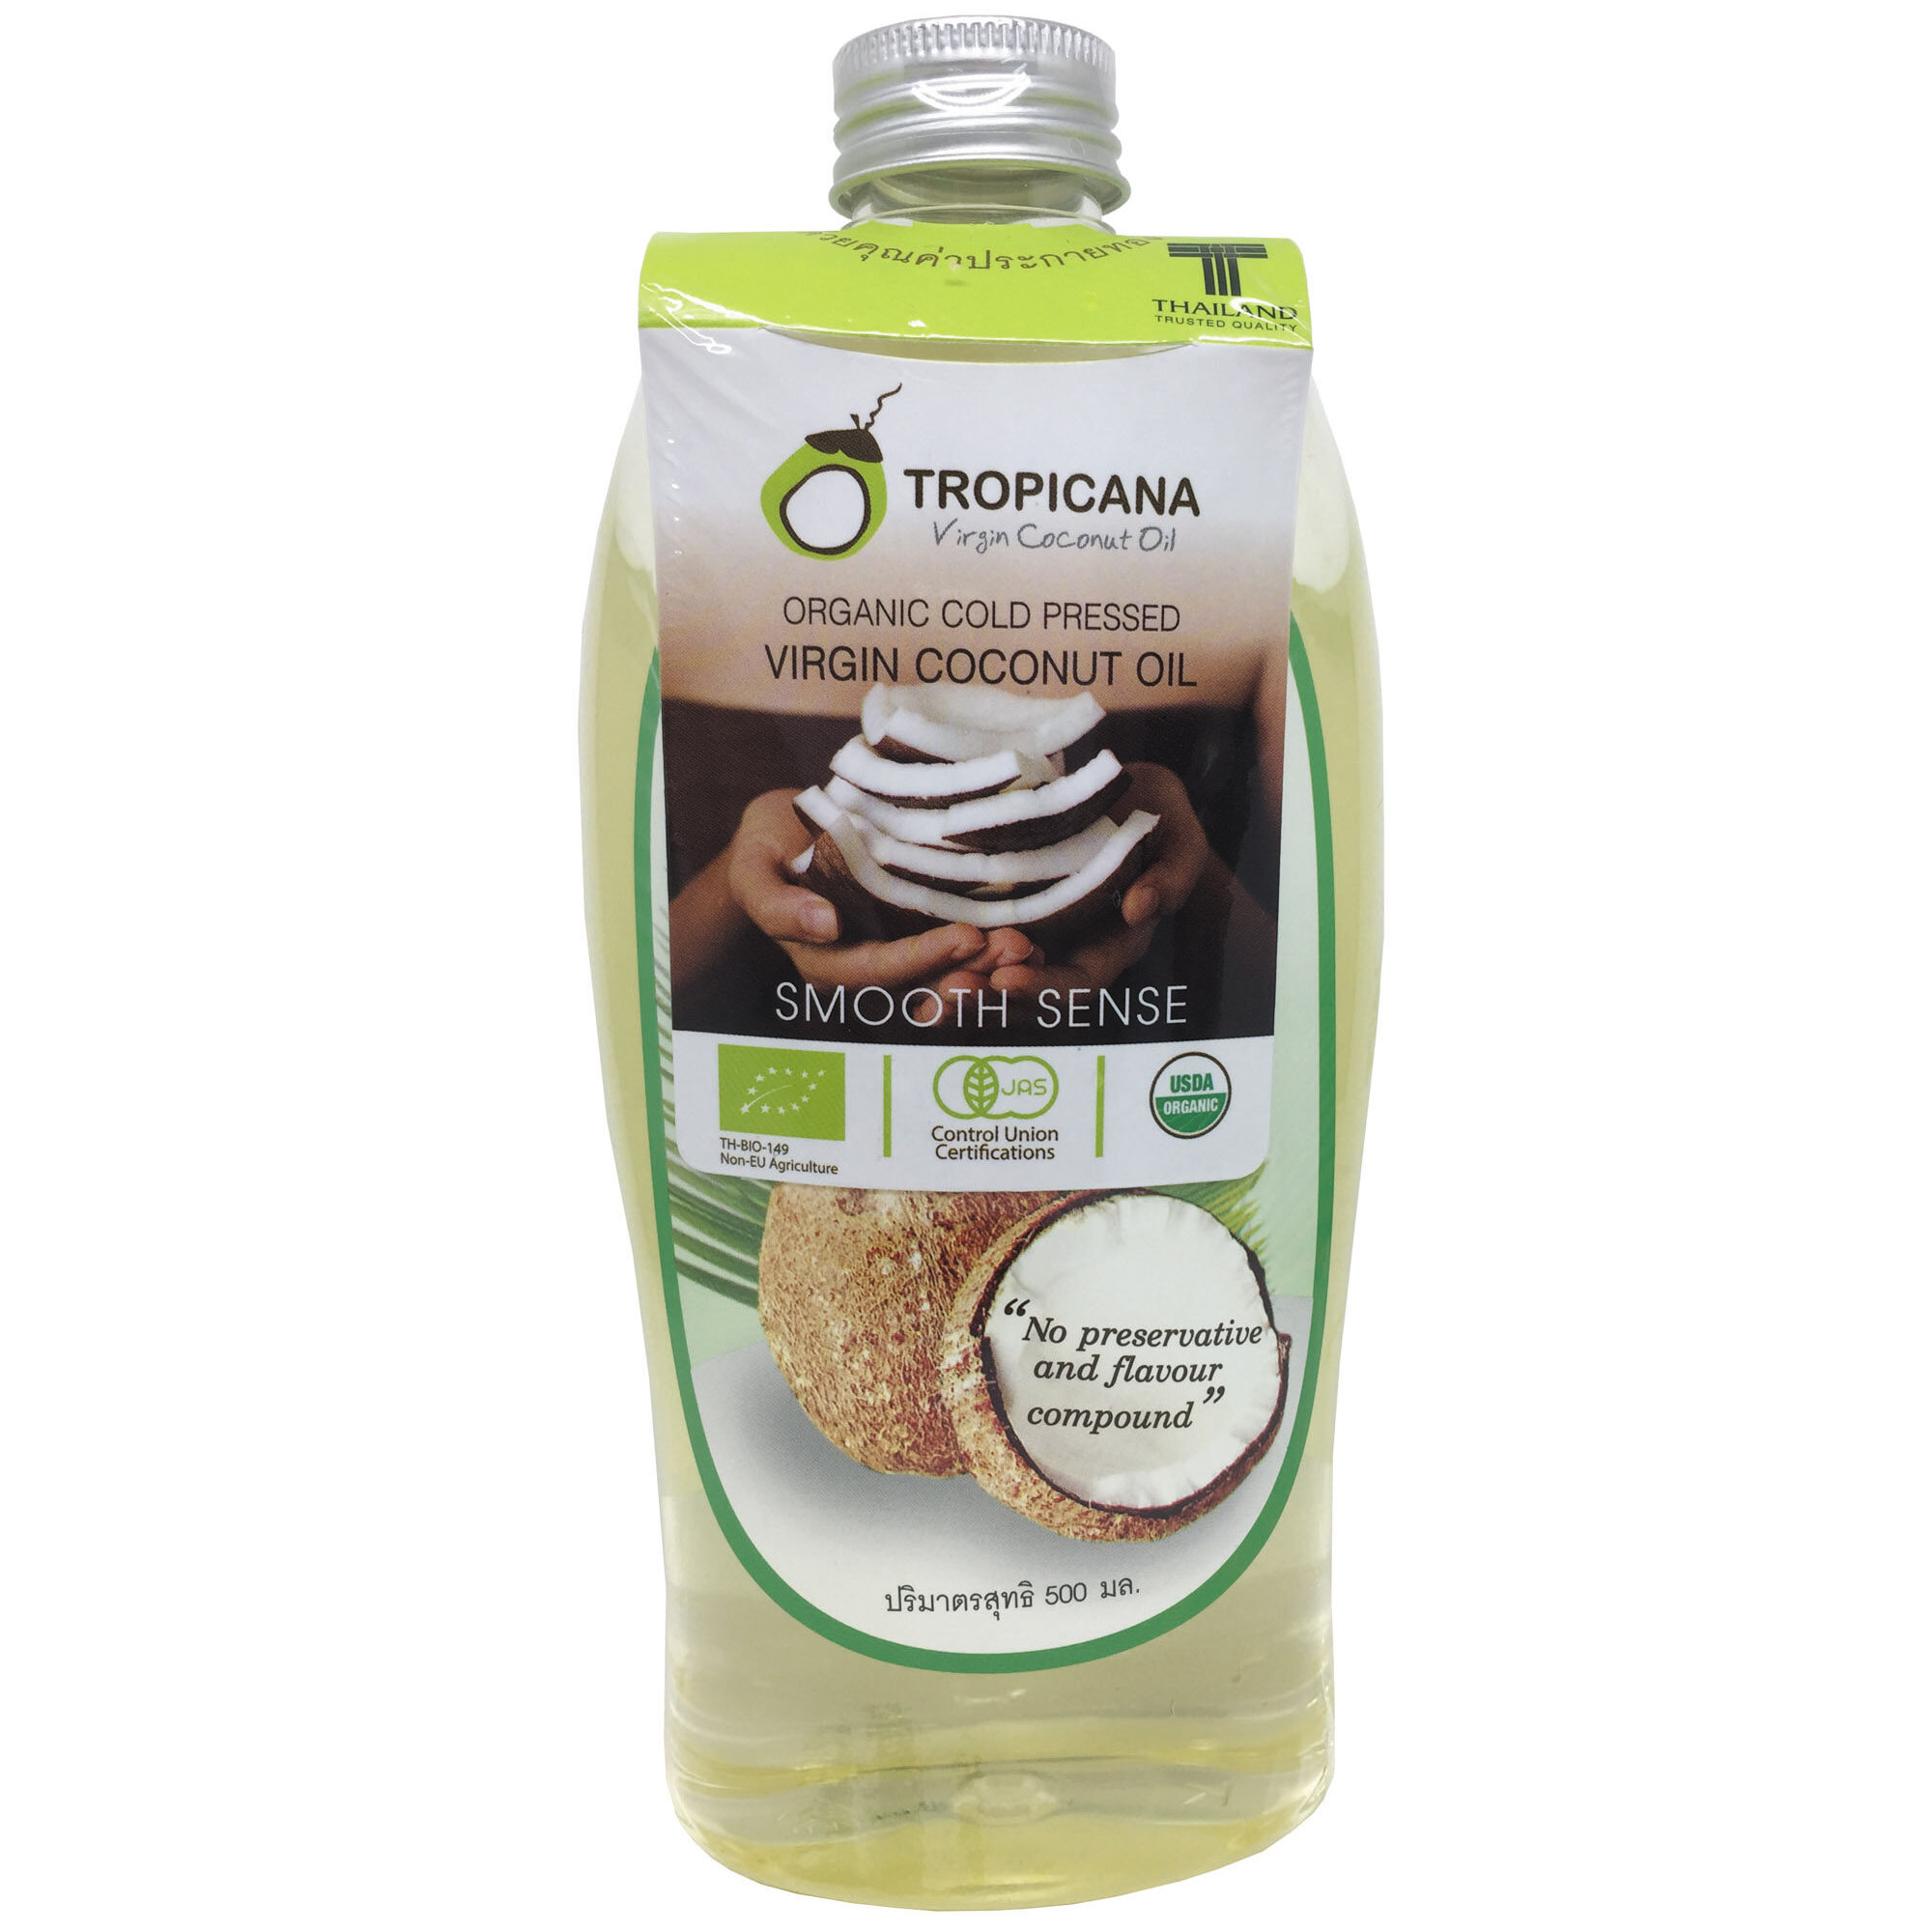 Tropicana น้ำมันมะพร้าวบริสุทธิ์สกัดเย็นออร์แกนิก ขนาด 500 ml.